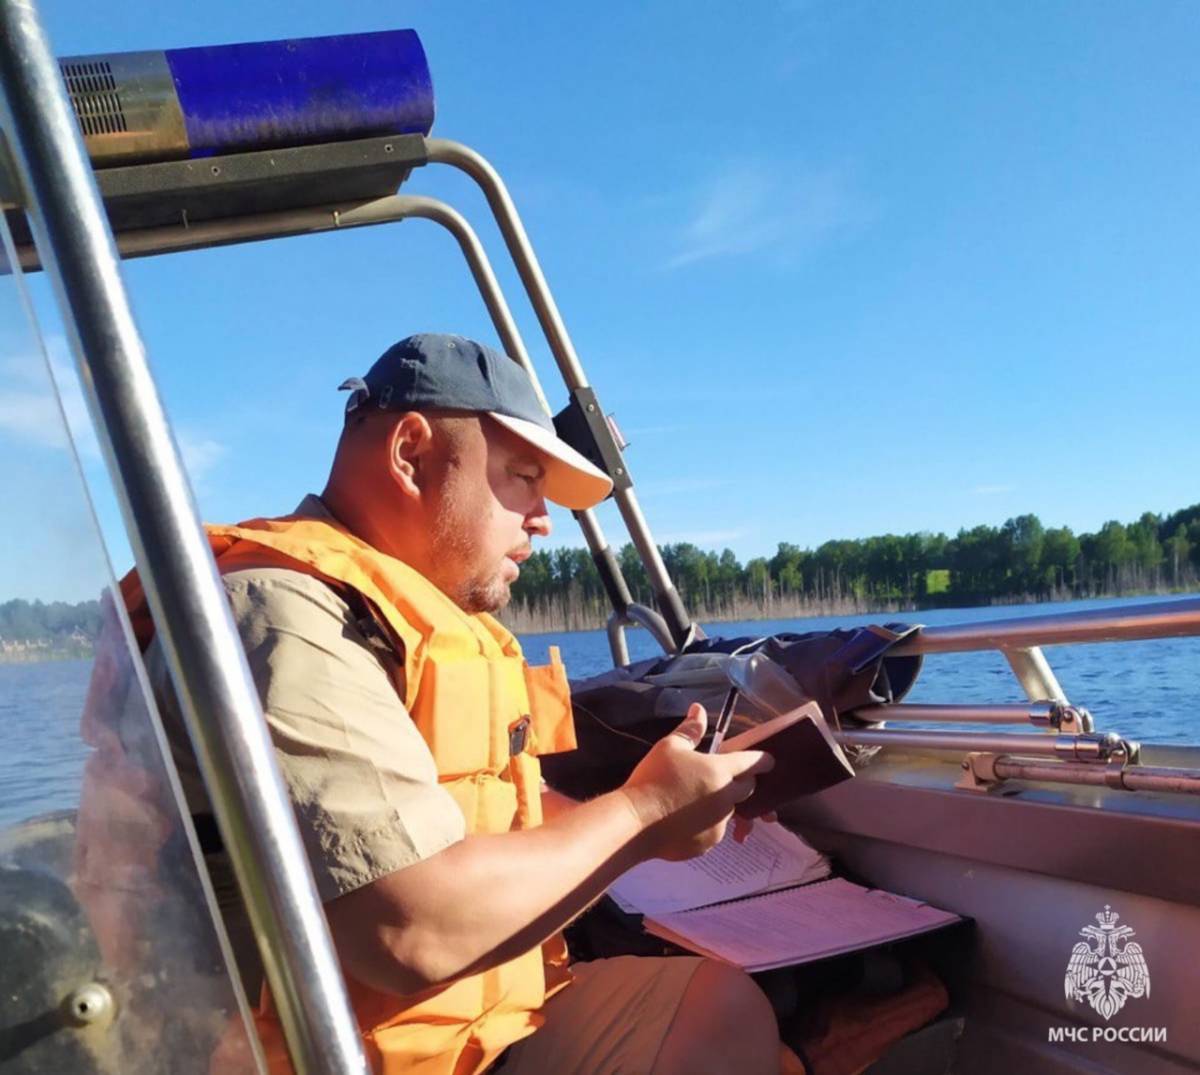 Ежегодно сотрудники совершают более 1200 патрулирований и рейдов на водных объектах Новгородской области